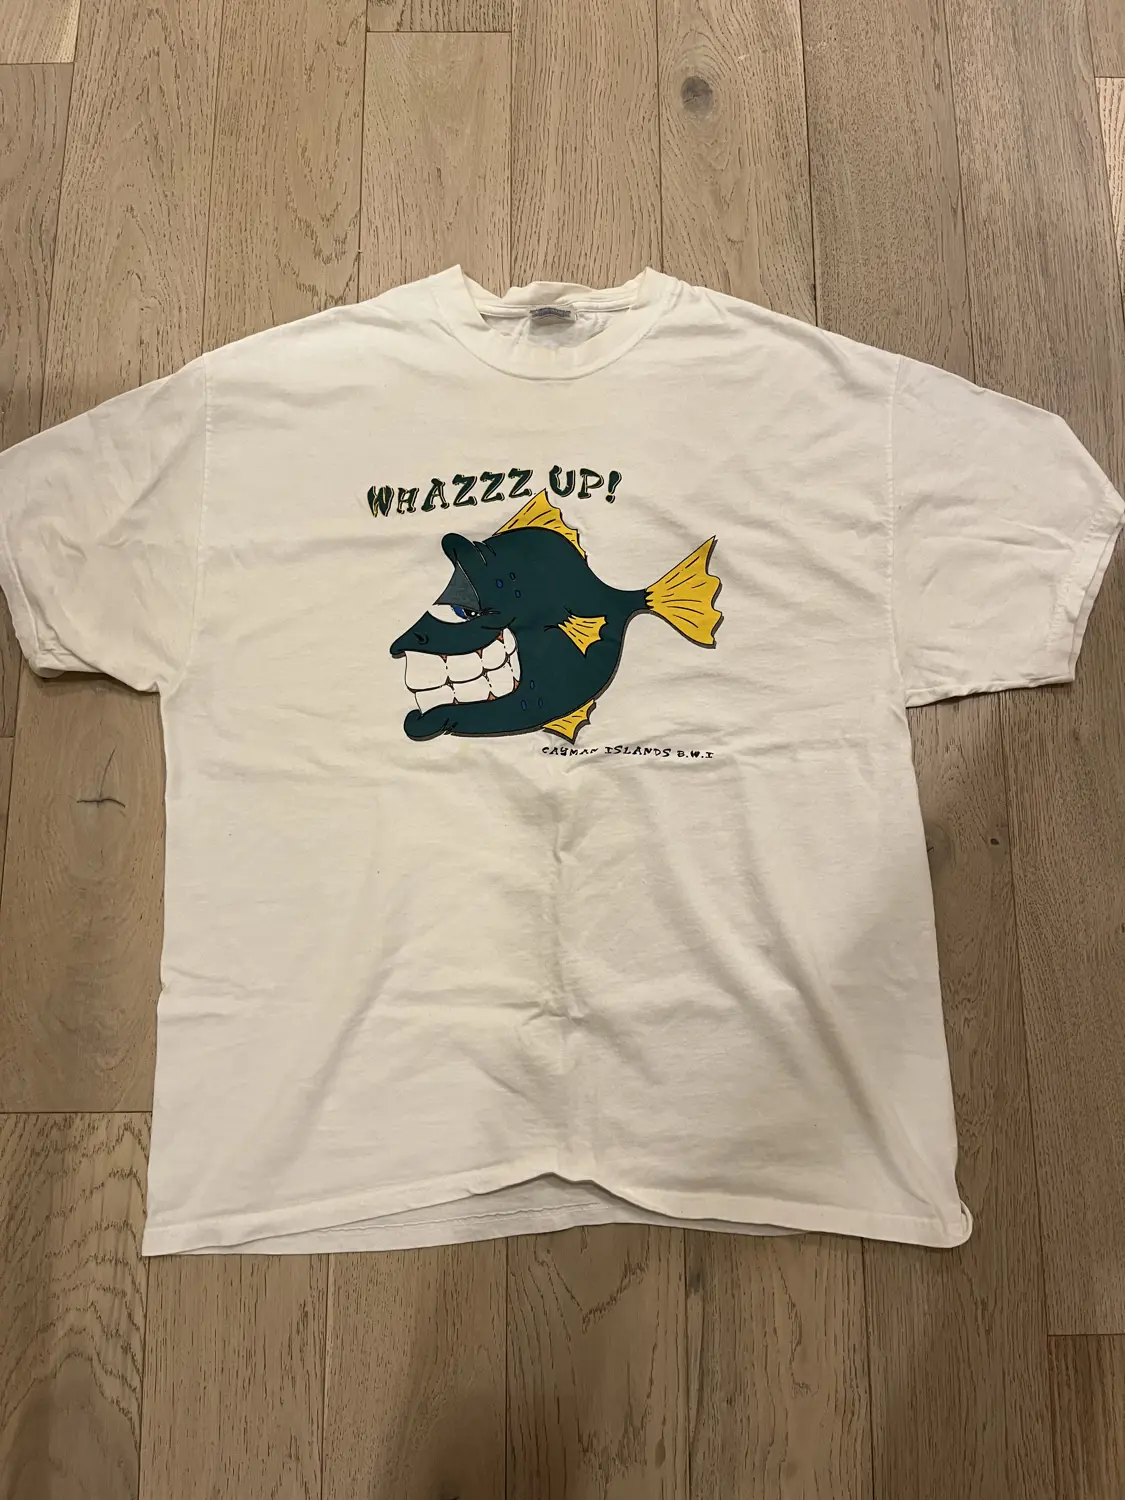 Whazzz Uppp (XL)